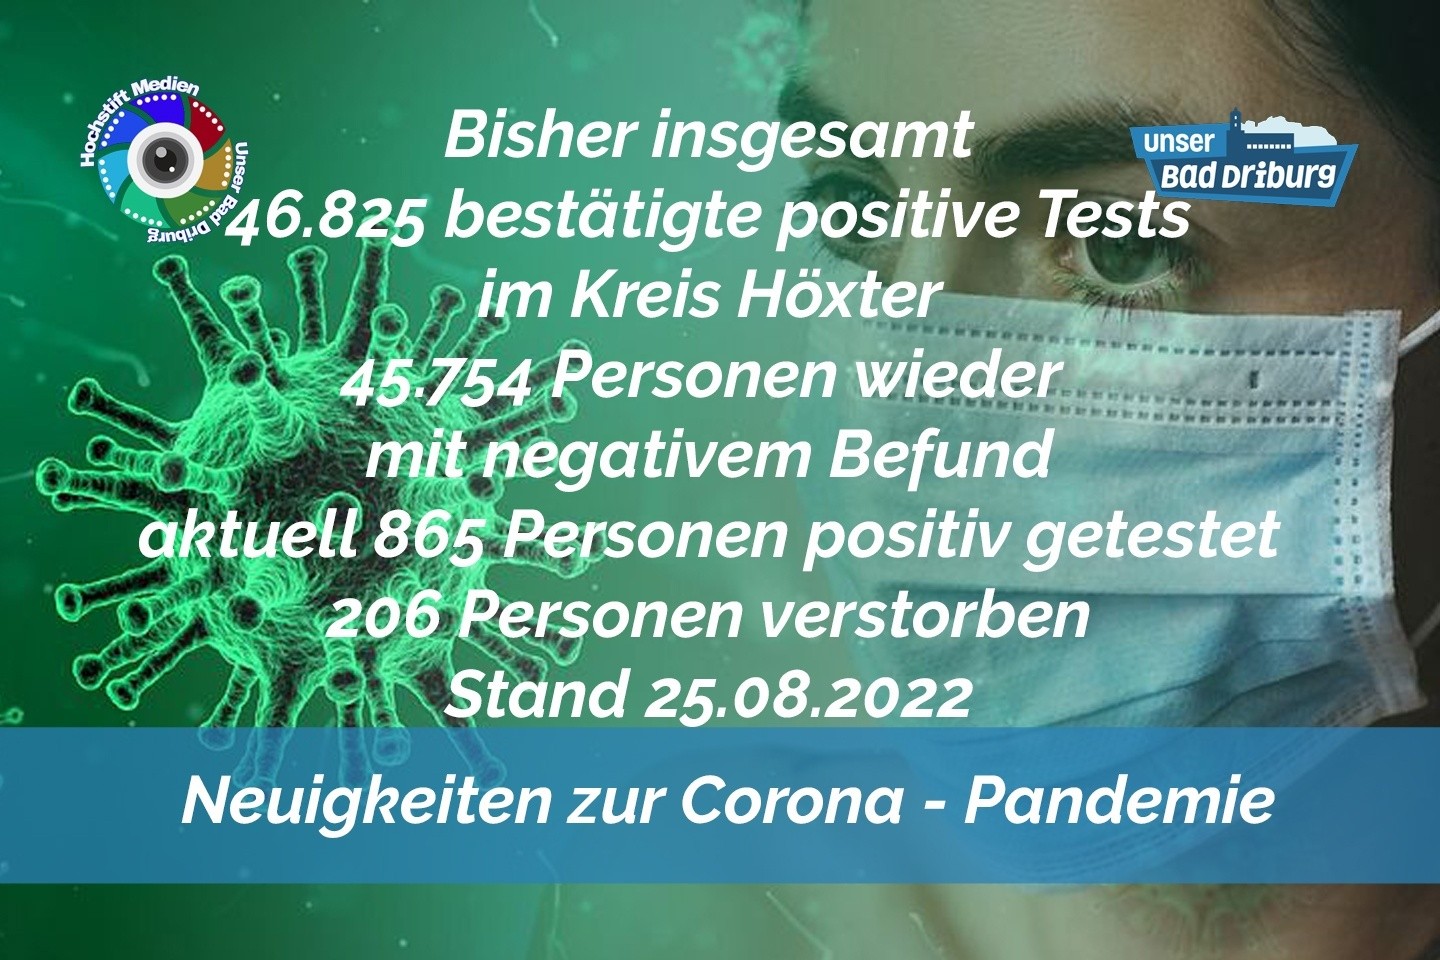 Update 25. August 2022: 99 weitere amtlich positive Tests im Kreis Höxter